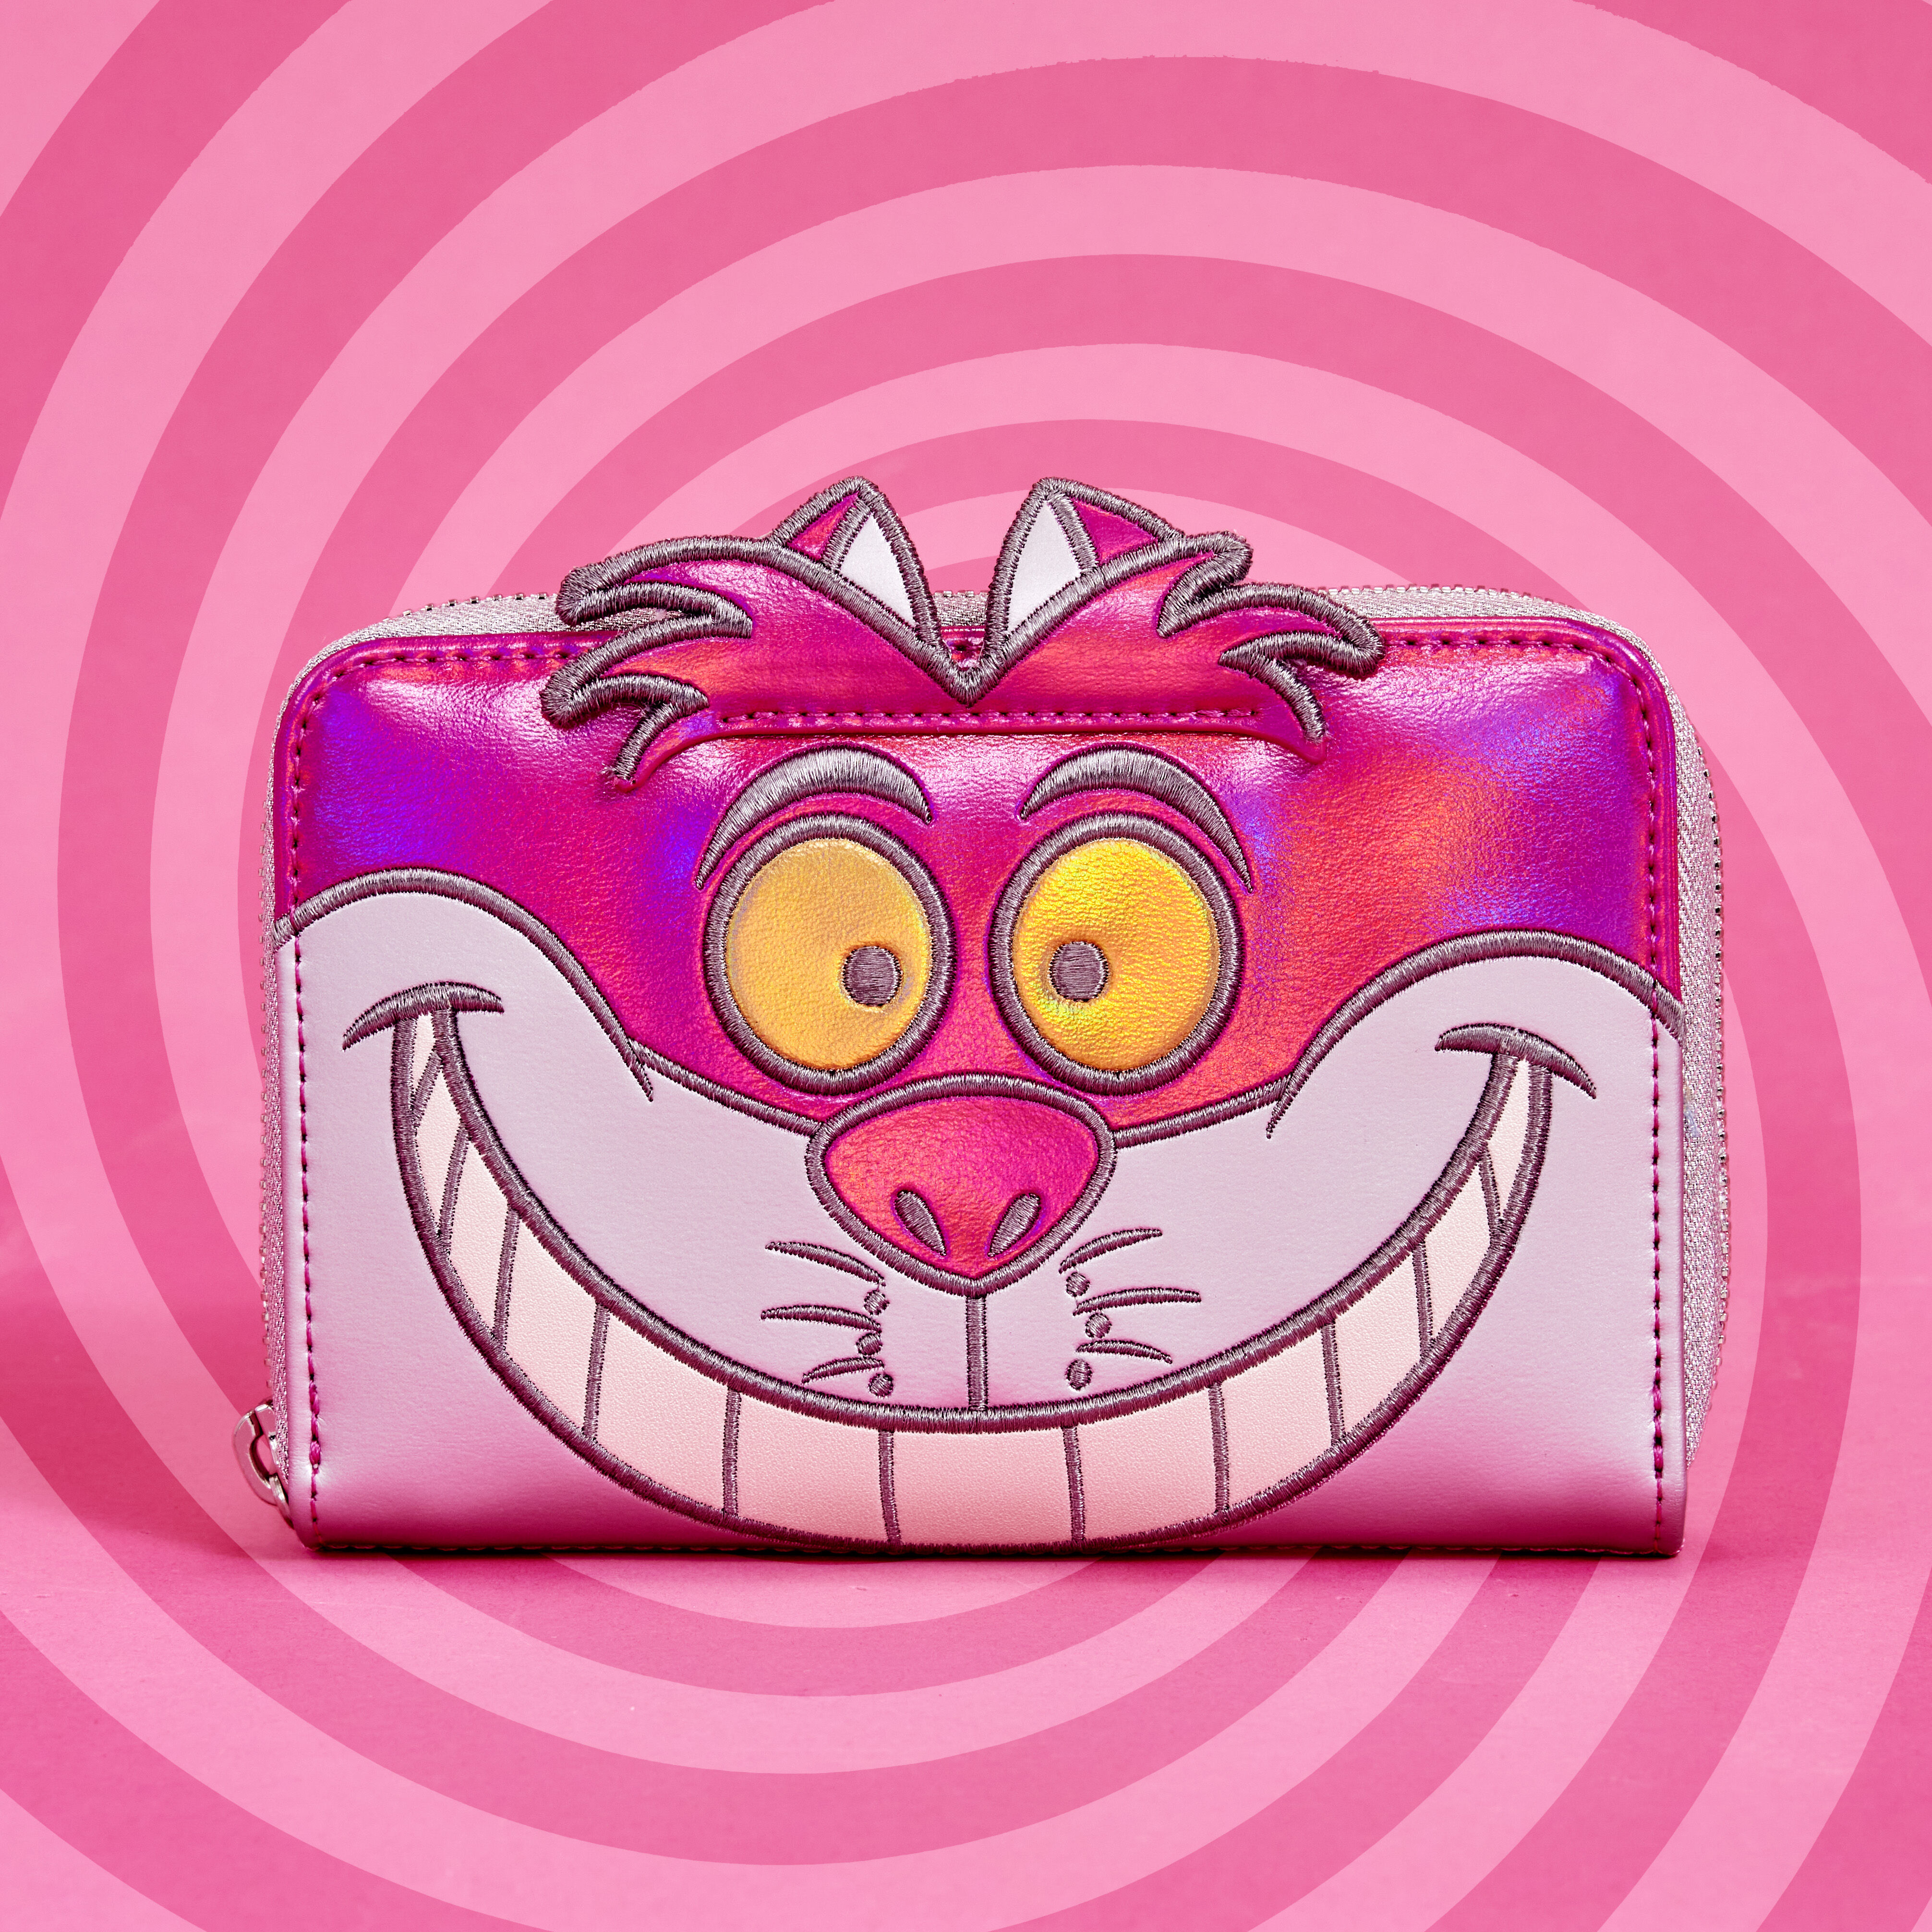 Disney100 Limited Edition Platinum Alice in Wonderland Cheshire Cat Cosplay  Zip Around Wallet